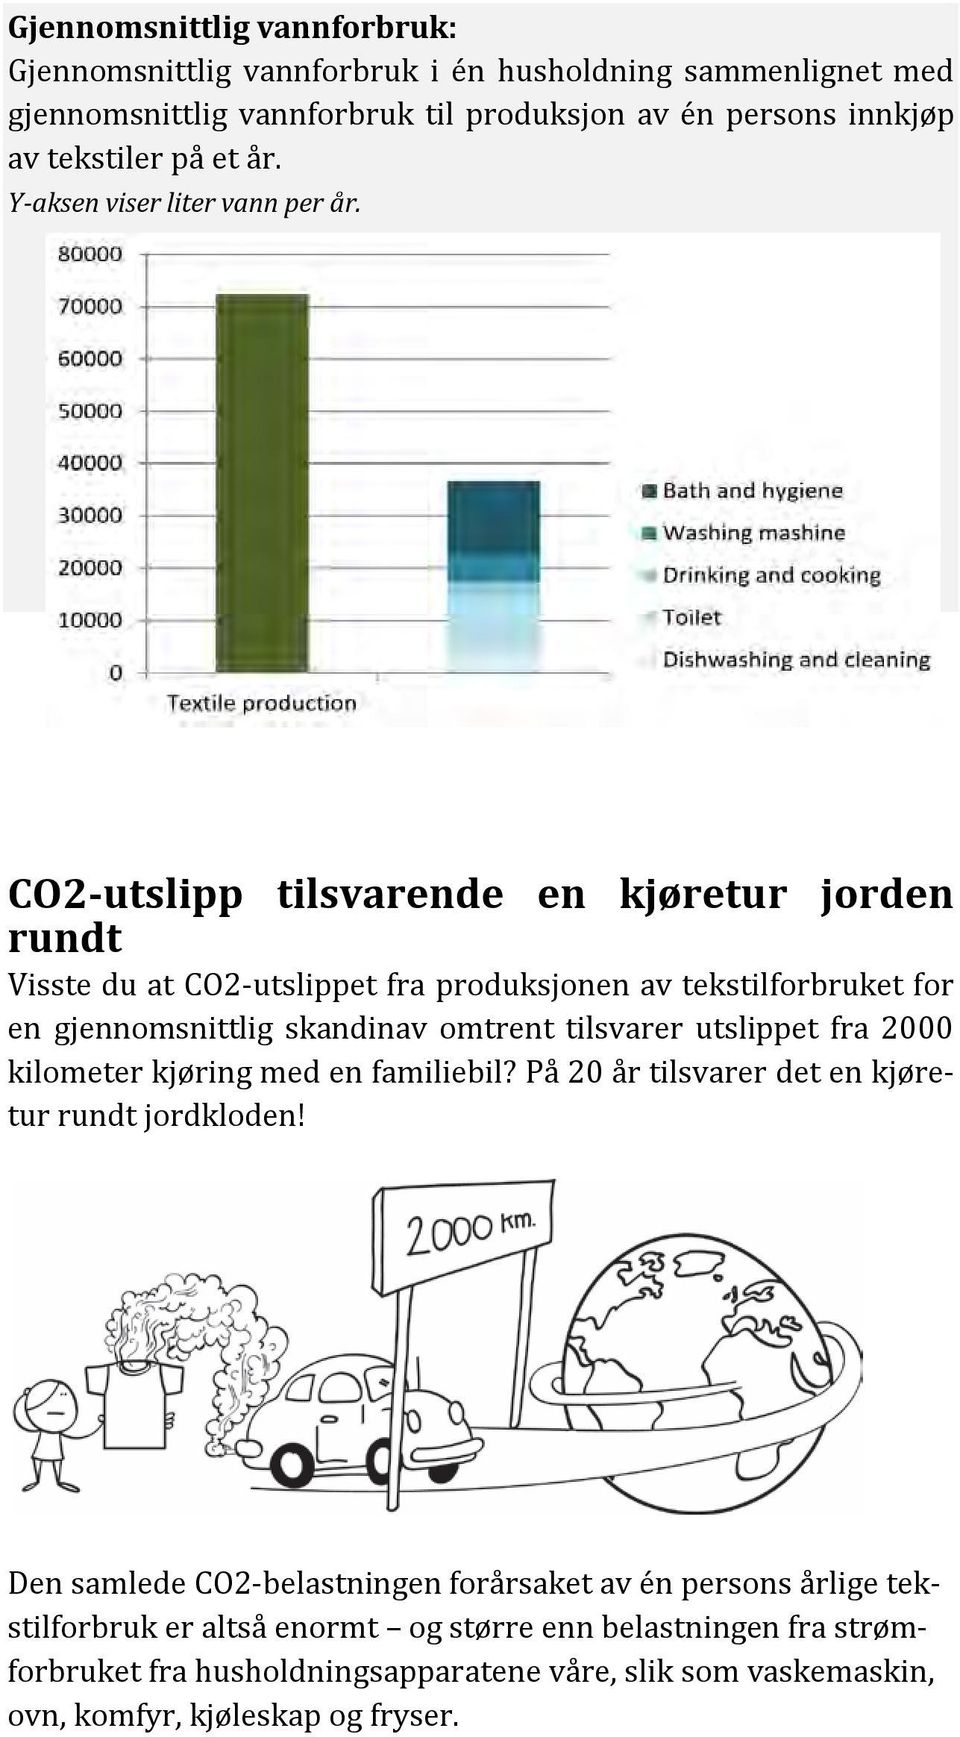 CO2-utslipp tilsvarende en kjøretur jorden rundt Visste du at CO2-utslippet fra produksjonen av tekstilforbruket for en gjennomsnittlig skandinav omtrent tilsvarer utslippet fra